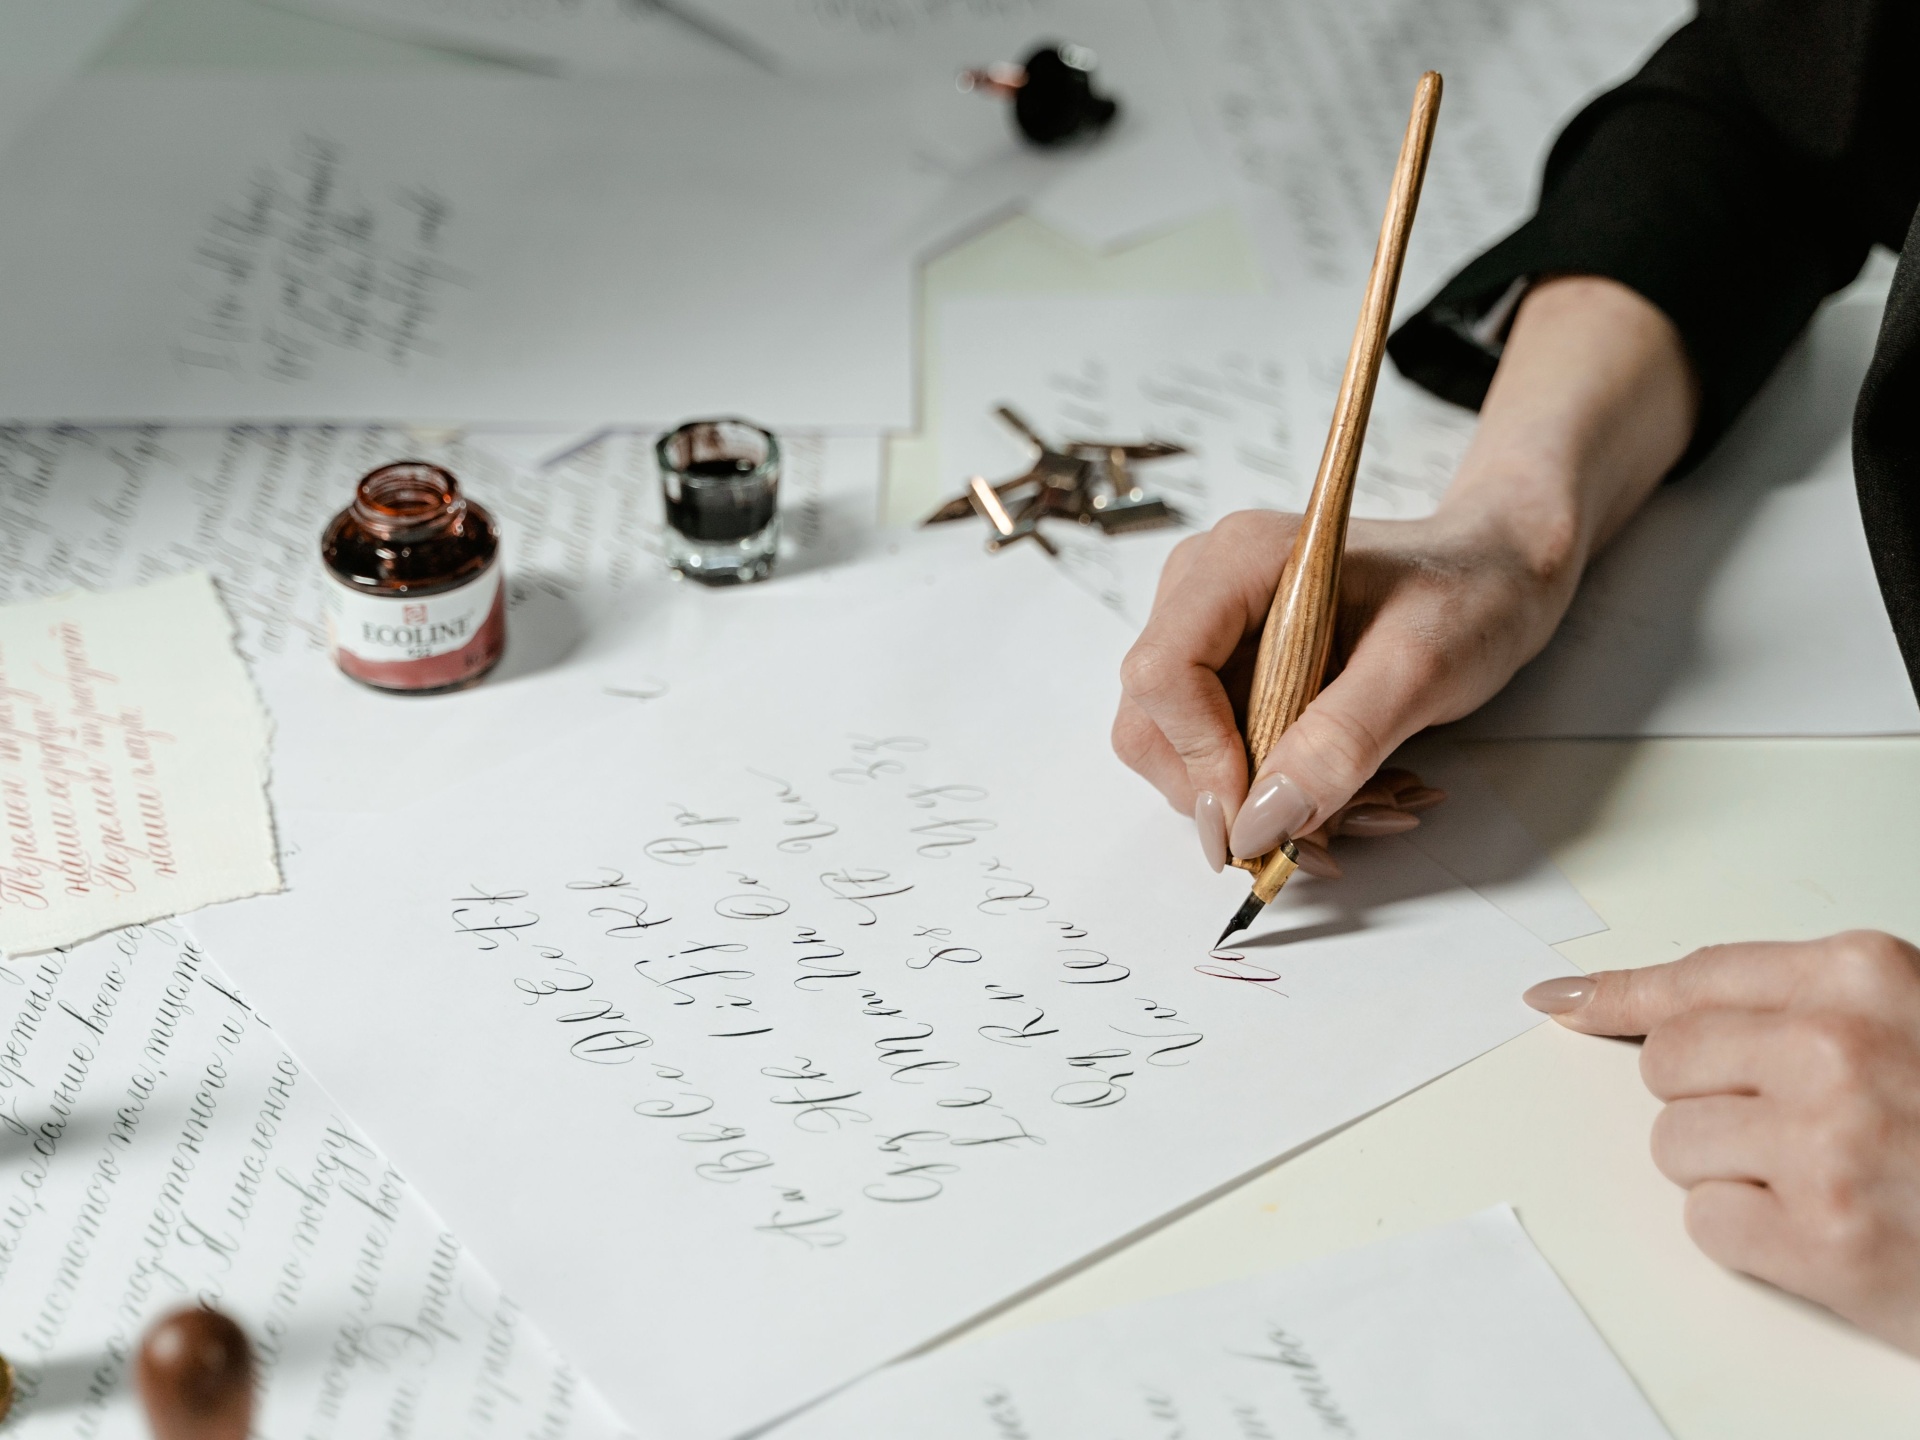 Co je kaligrafie a jak se snadno naučit kaligrafické psaní